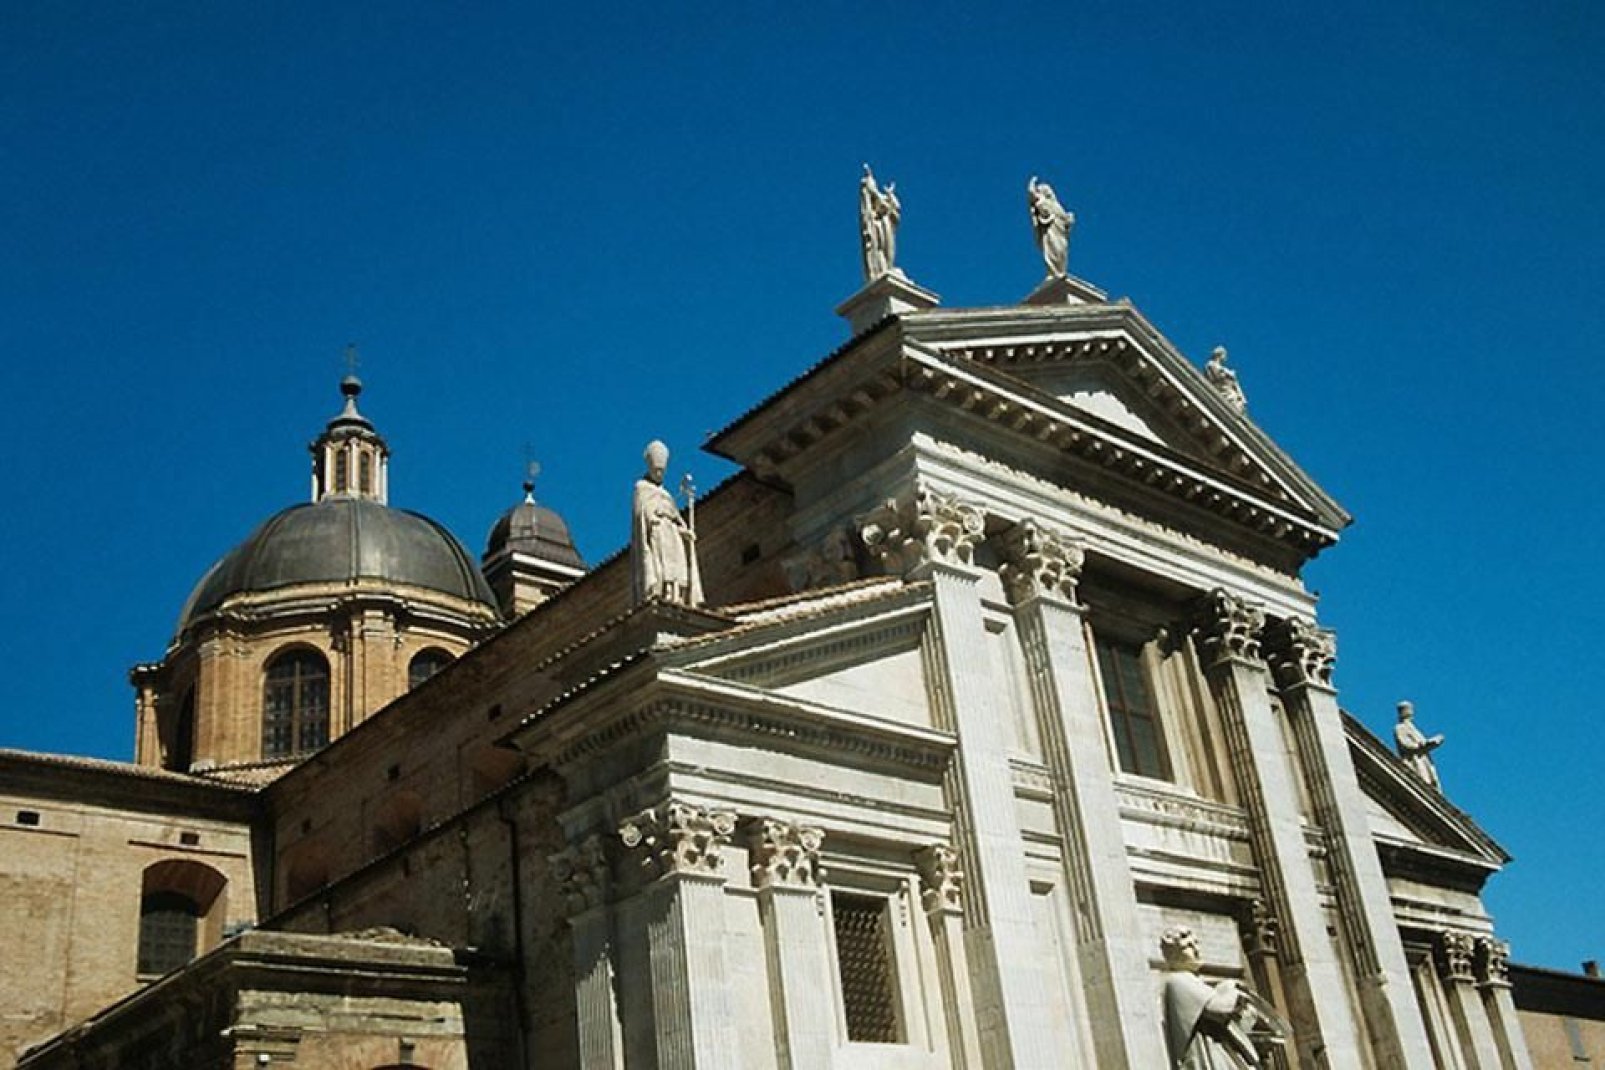 Il Duomo di Urbino, dedicato a Santa Maria Assunta, fu ricostruito in seguito ad un terremoto che nel 1789 distrusse l'antica Chiesa